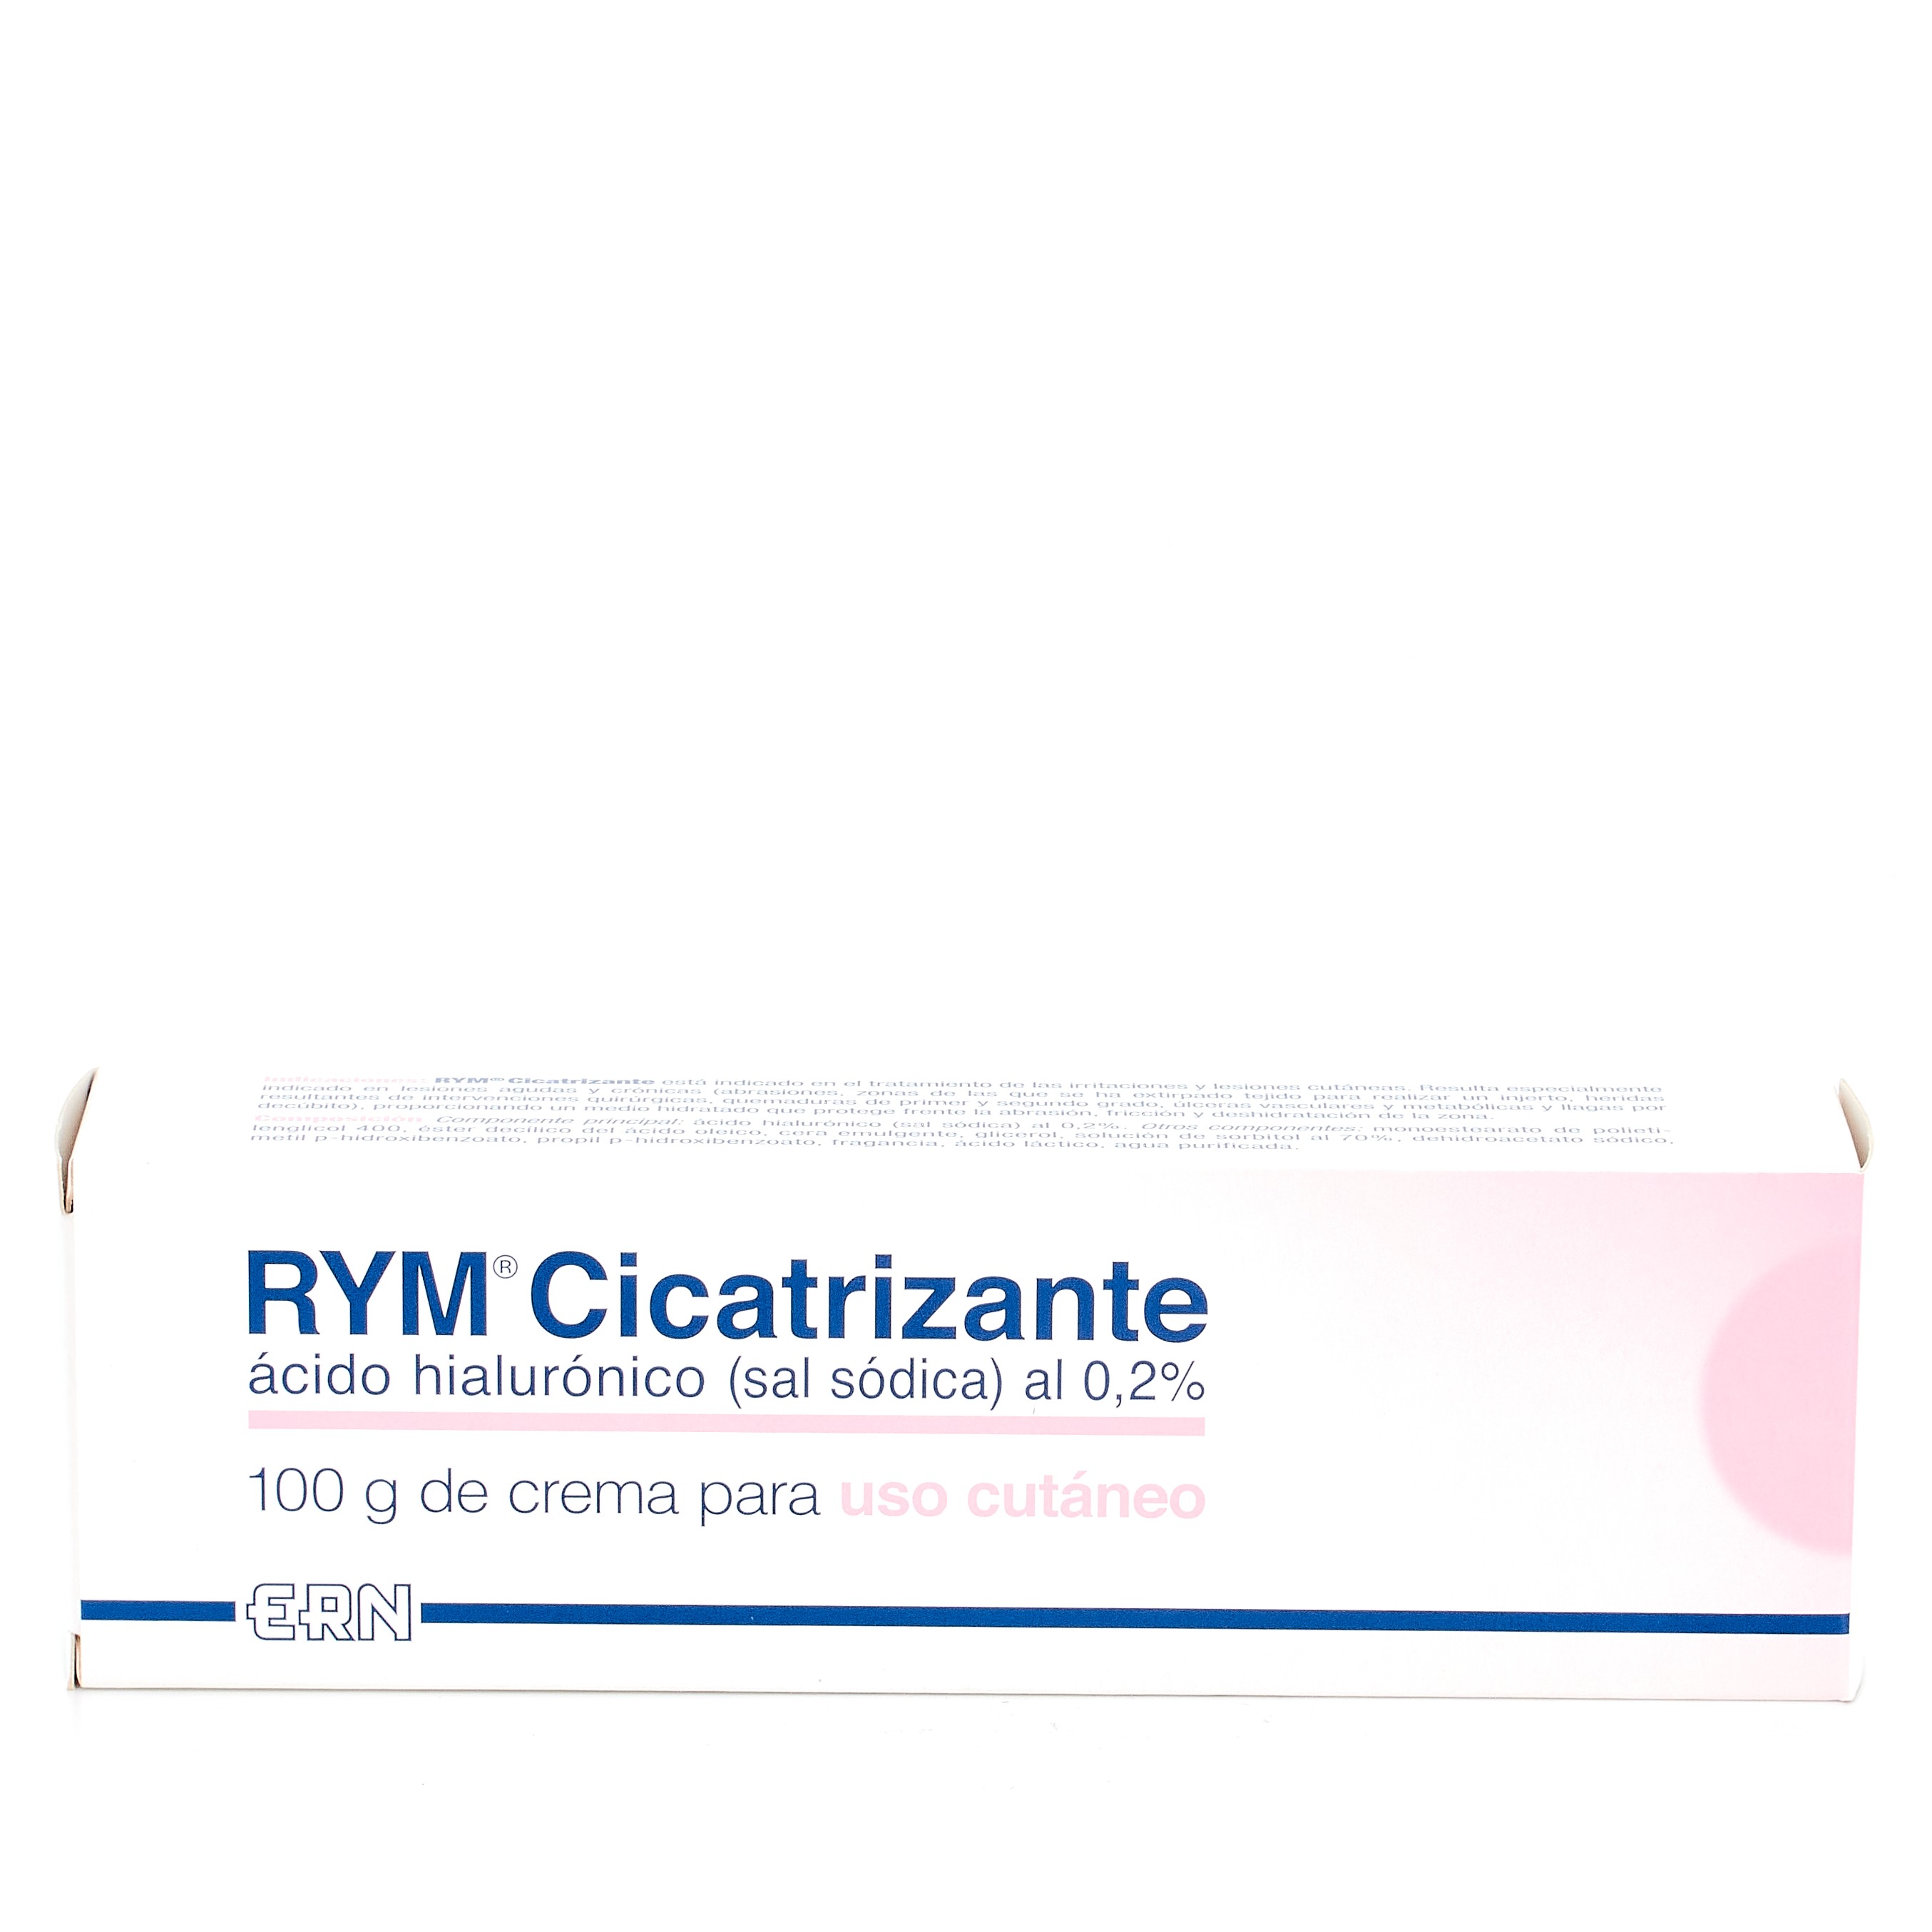 ERN RYM Cicatrizante, 100 g